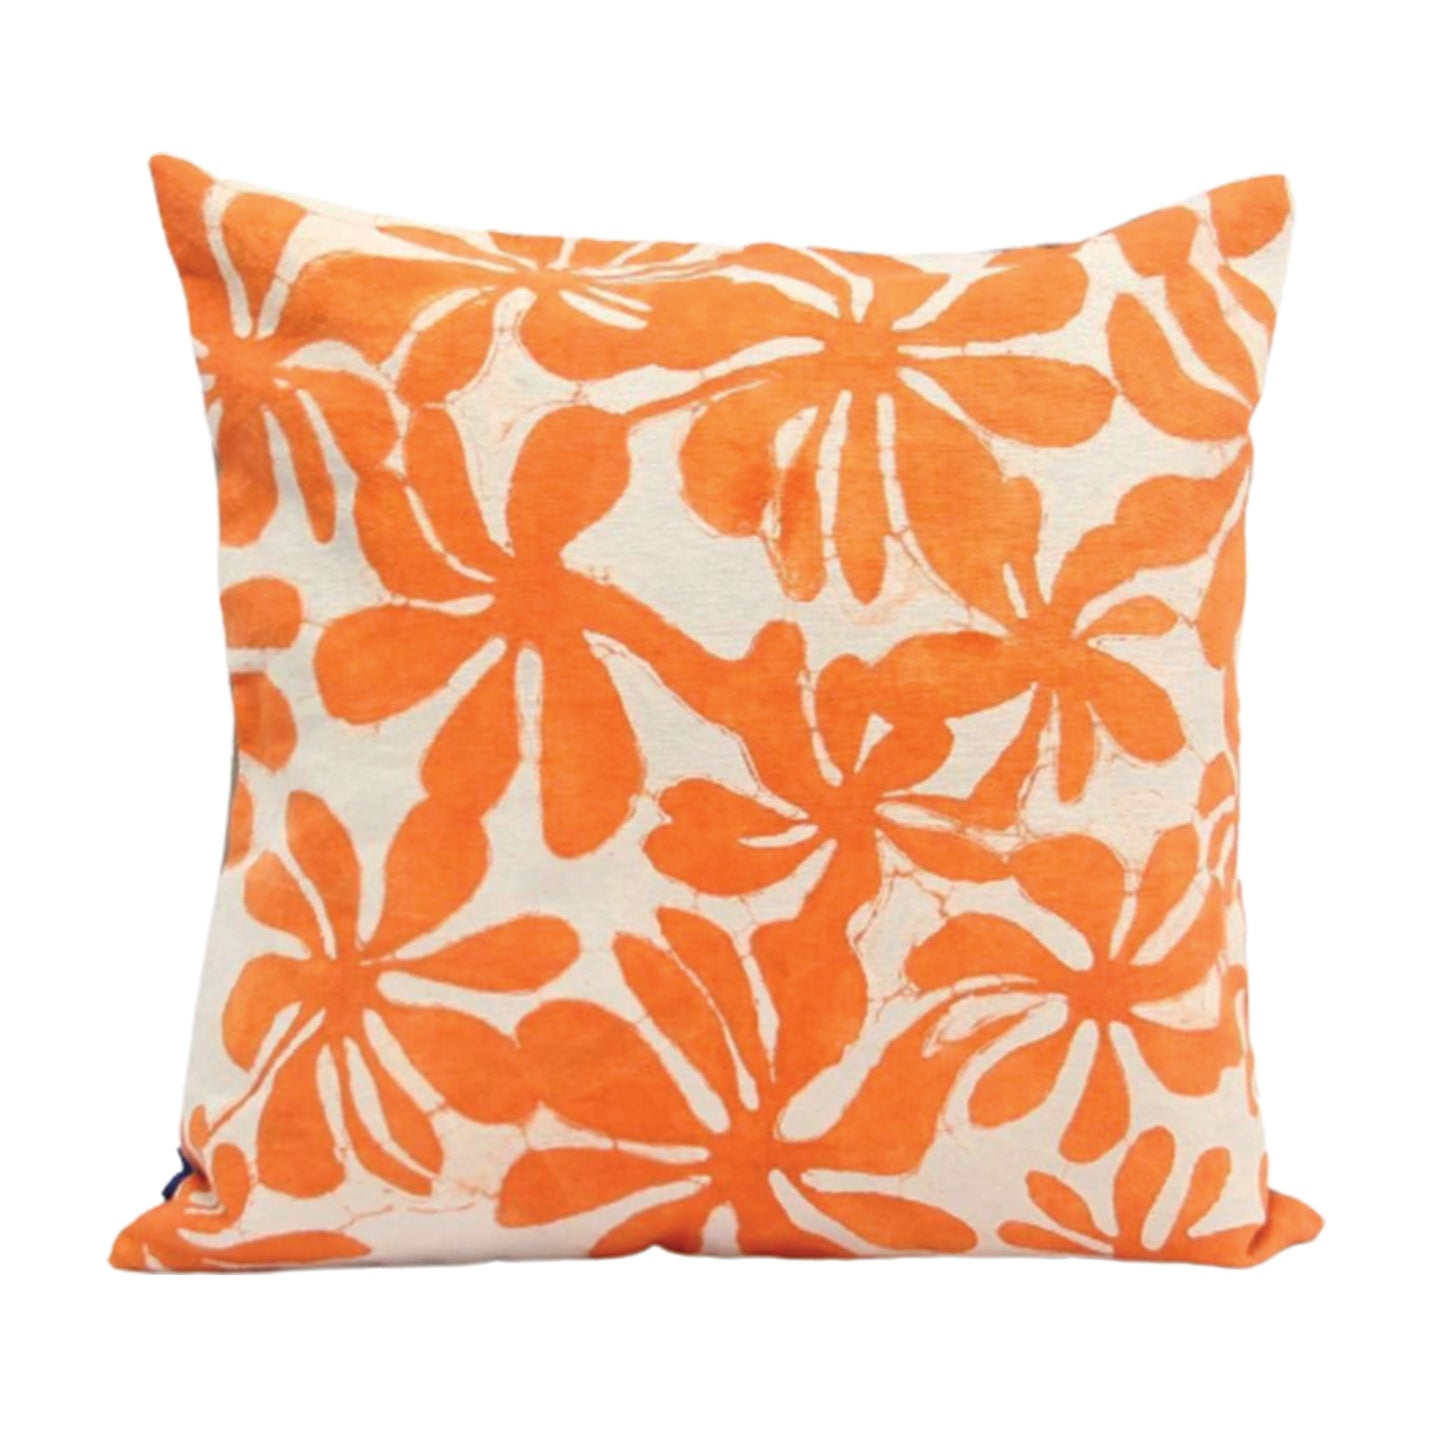 Araliya Pillow Cover - Orange